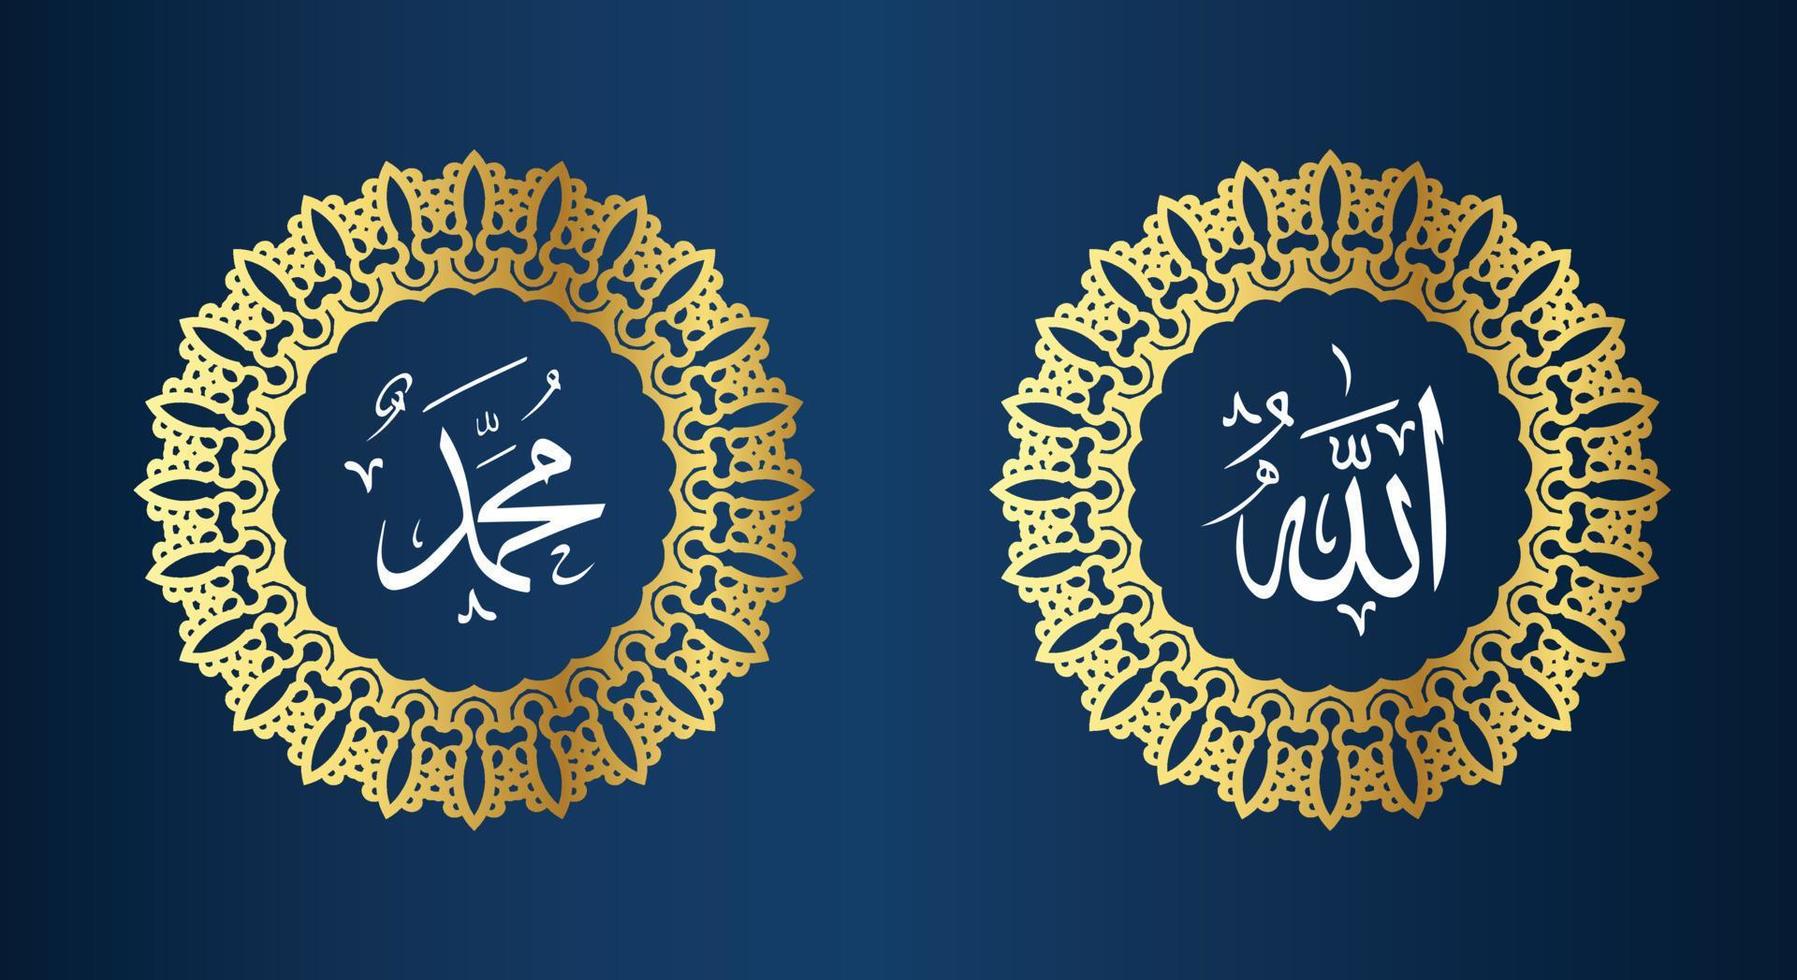 allah muhammad nom d'allah muhammad, art de la calligraphie islamique arabe allah muhammad, avec cadre traditionnel et couleur dorée vecteur